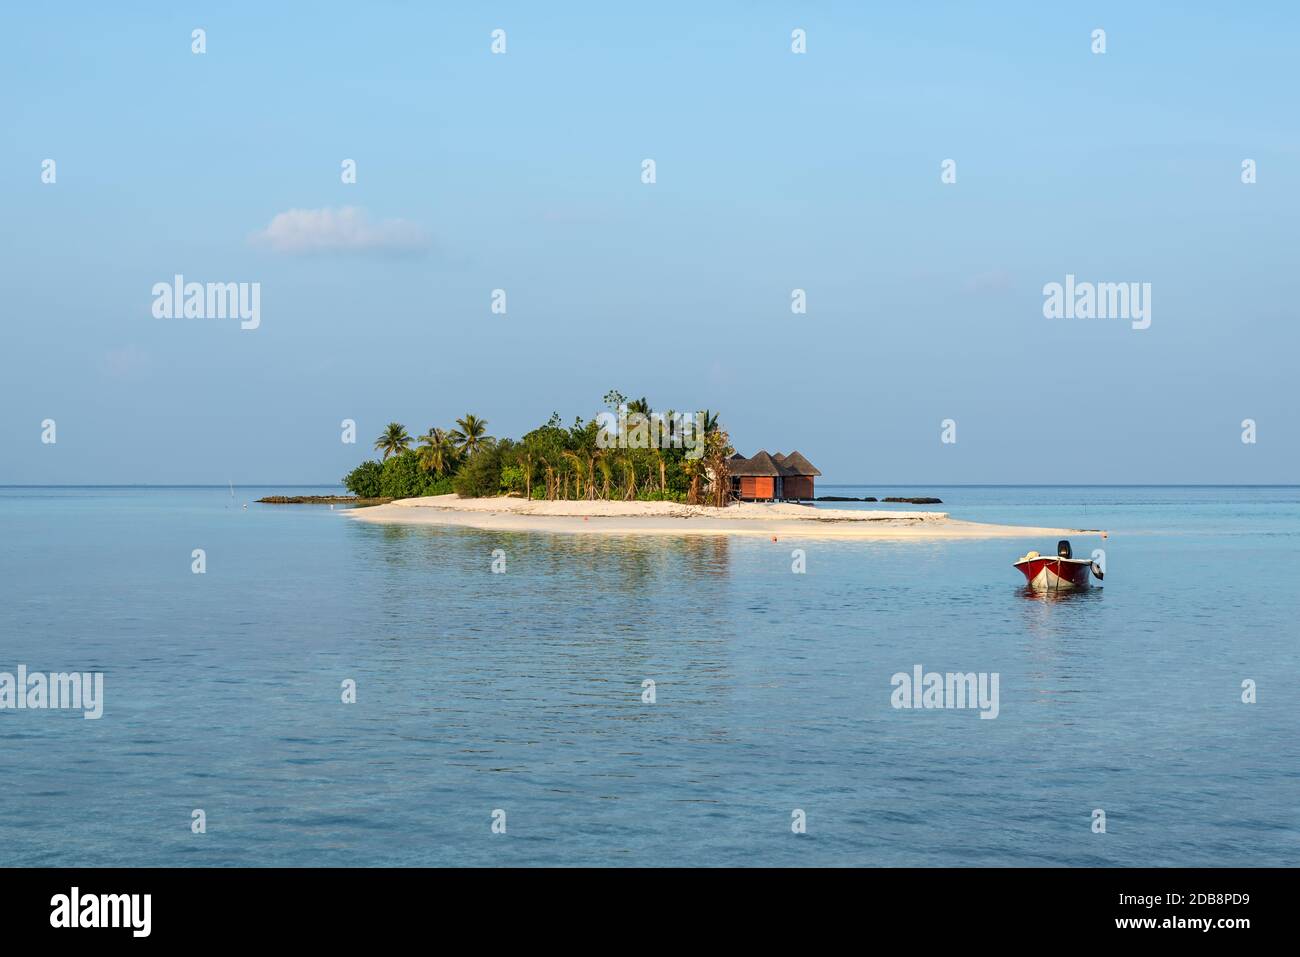 Paysage avec une petite île dans les Maldives, l'Océan Indien, l'Atoll de Kaafu, Kuda Huraa Island. Un bateau à moteur est ancrée dans l'avant-plan. Banque D'Images